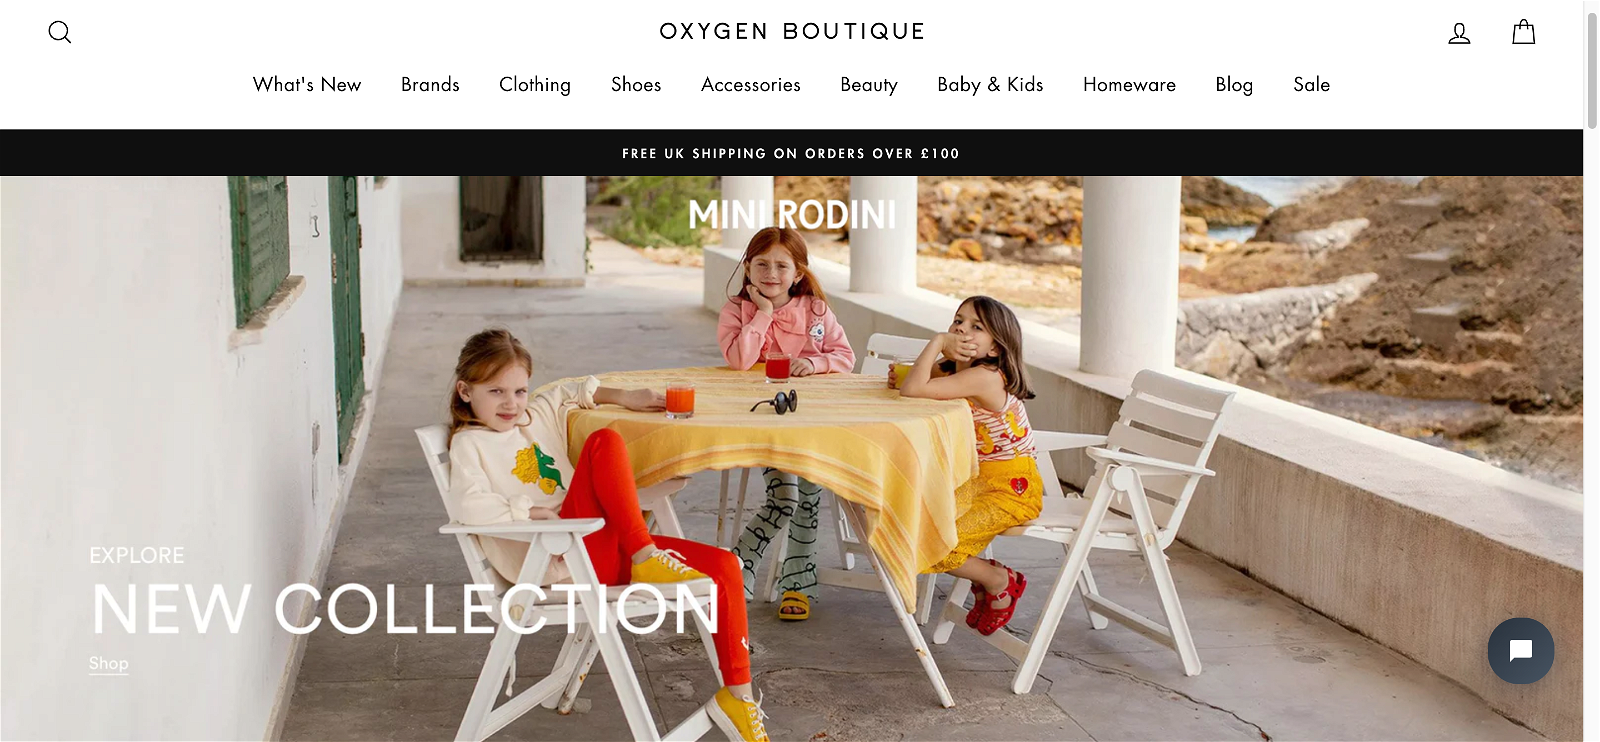 Oxygen boutique.com